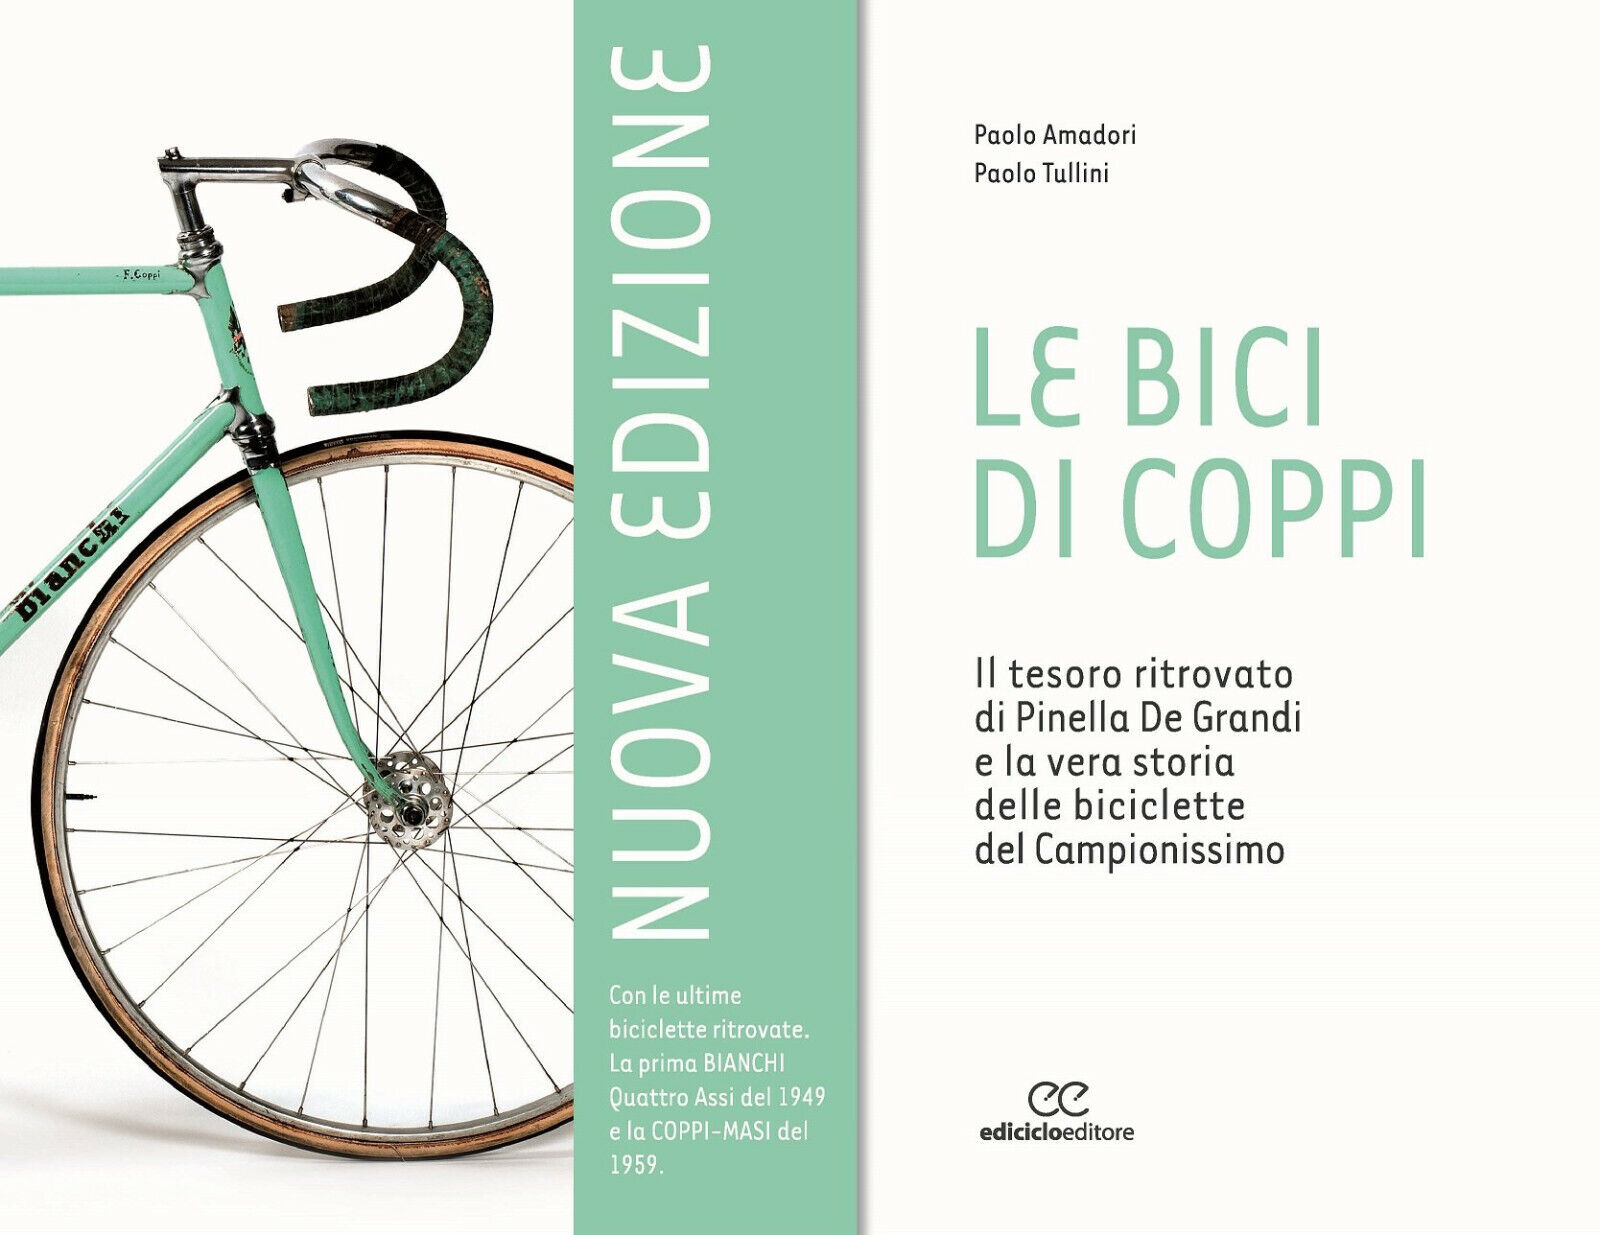 Le bici di Coppi - Paolo Amadori, Paolo Tullini - Ediciclo, 2016